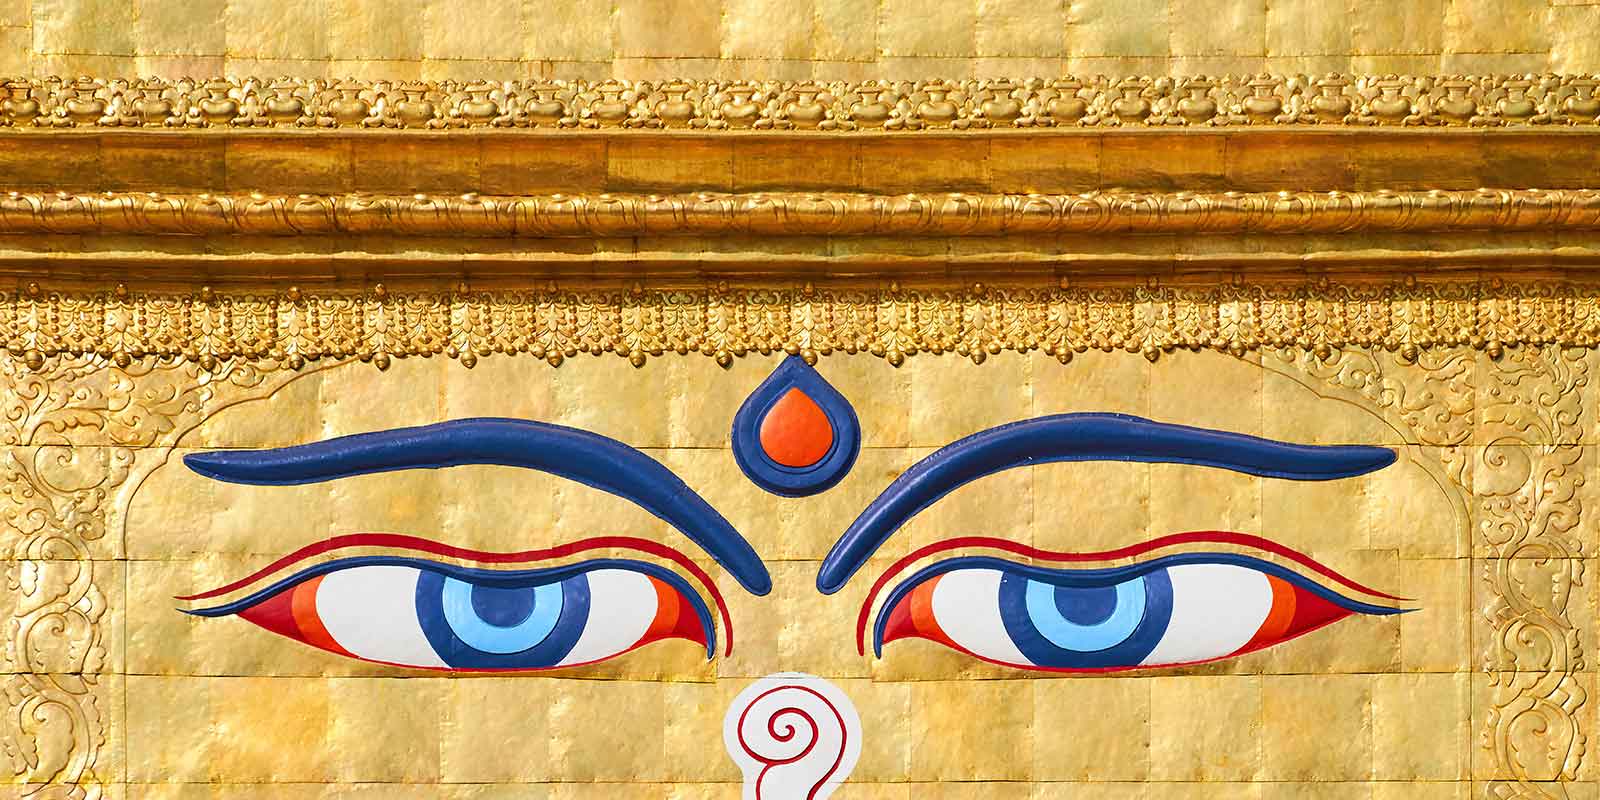 Eyes of Buddha on gold background at Boudhanath stupa